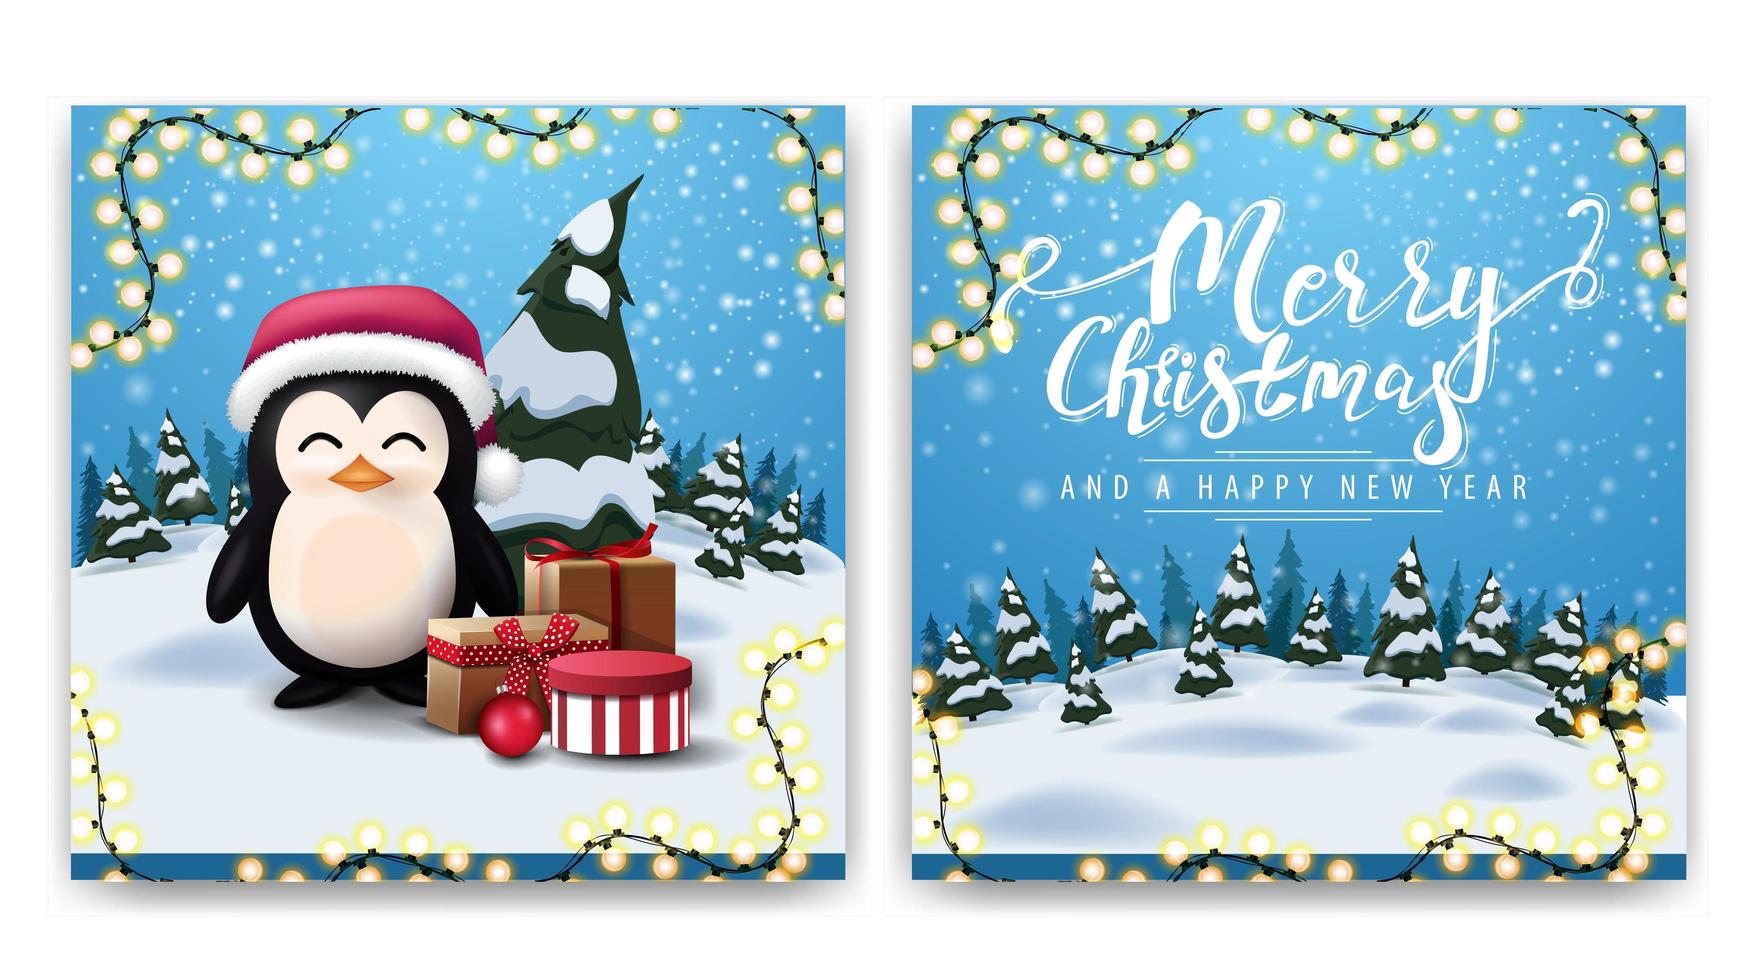 zweiseitige Postkarte des Weihnachtsquadrats mit Karikaturwinterlandschaft und Pinguin im Weihnachtsmannhut mit Geschenken vektor